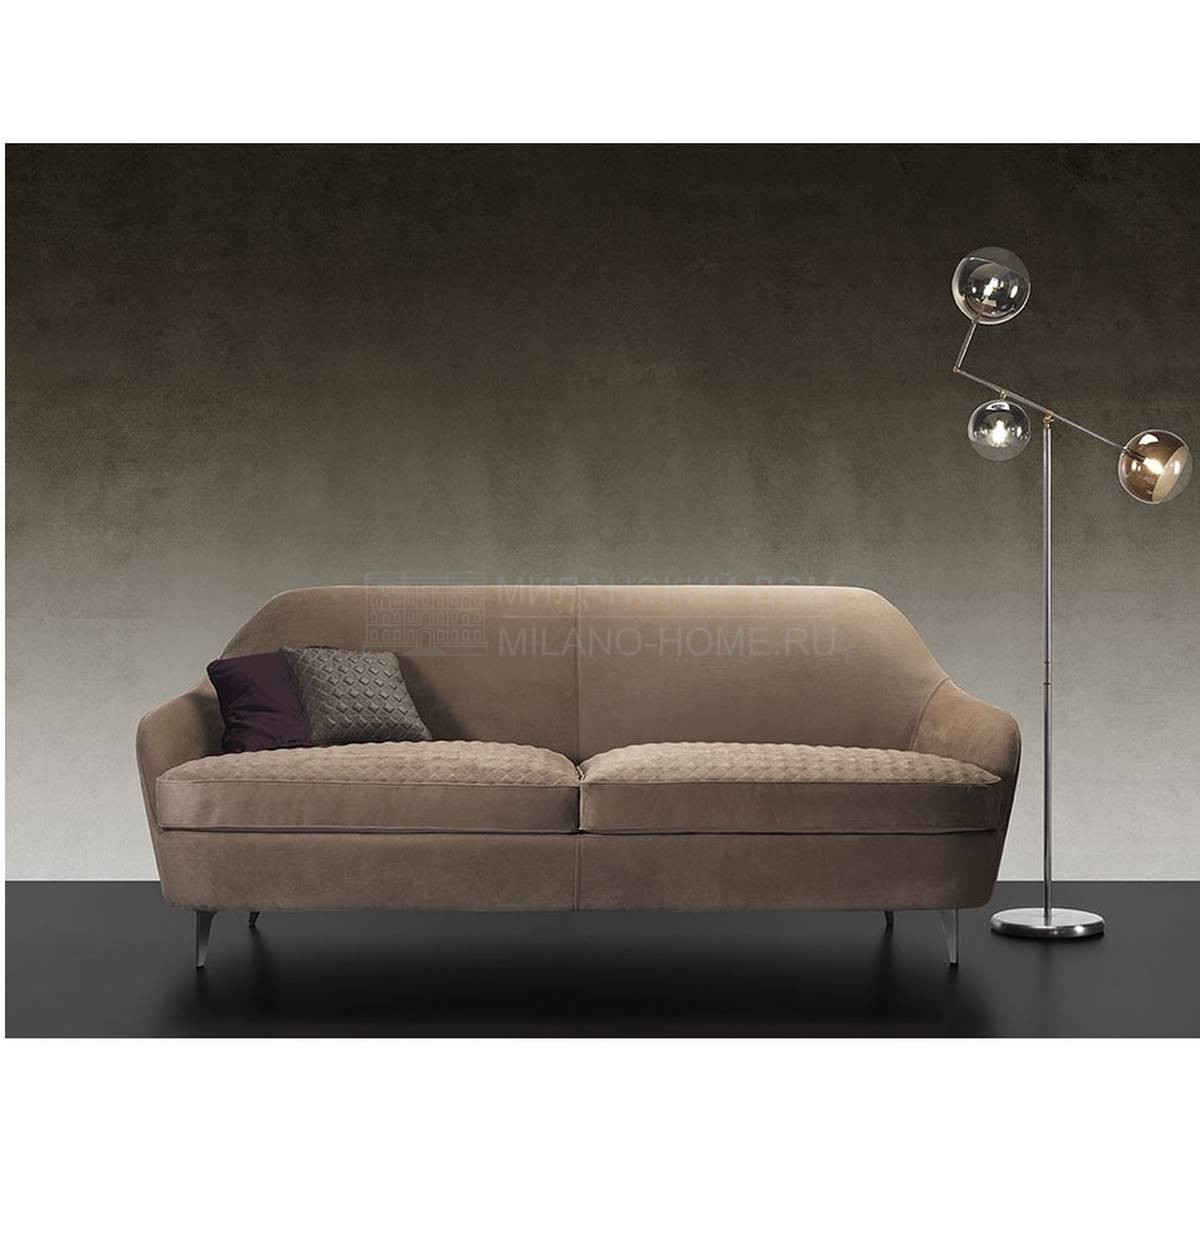 Прямой диван Nuvola Sofa из Италии фабрики REFLEX ANGELO